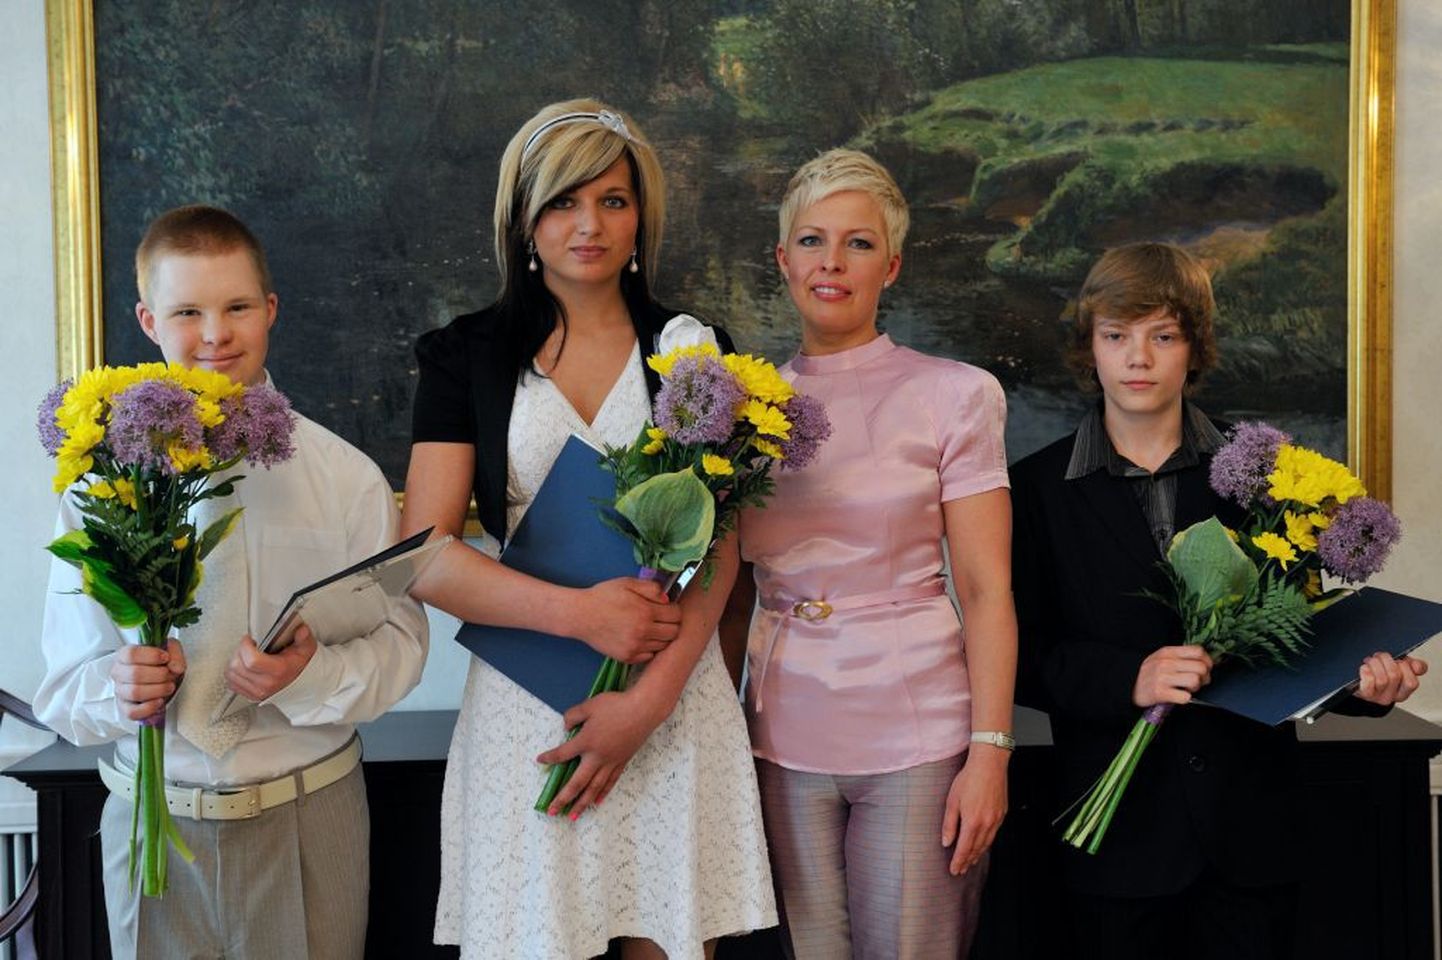 Presidendiproua Evelin Ilves hindas kõrgelt Tõstamaa neiu Liina Laasma (keskel vasakul) sportlikke saavutusi. Noore sportlase preemia pälvisid veel suusahüppaja Kristjan Ilves ja ujuja Eric Töttile.